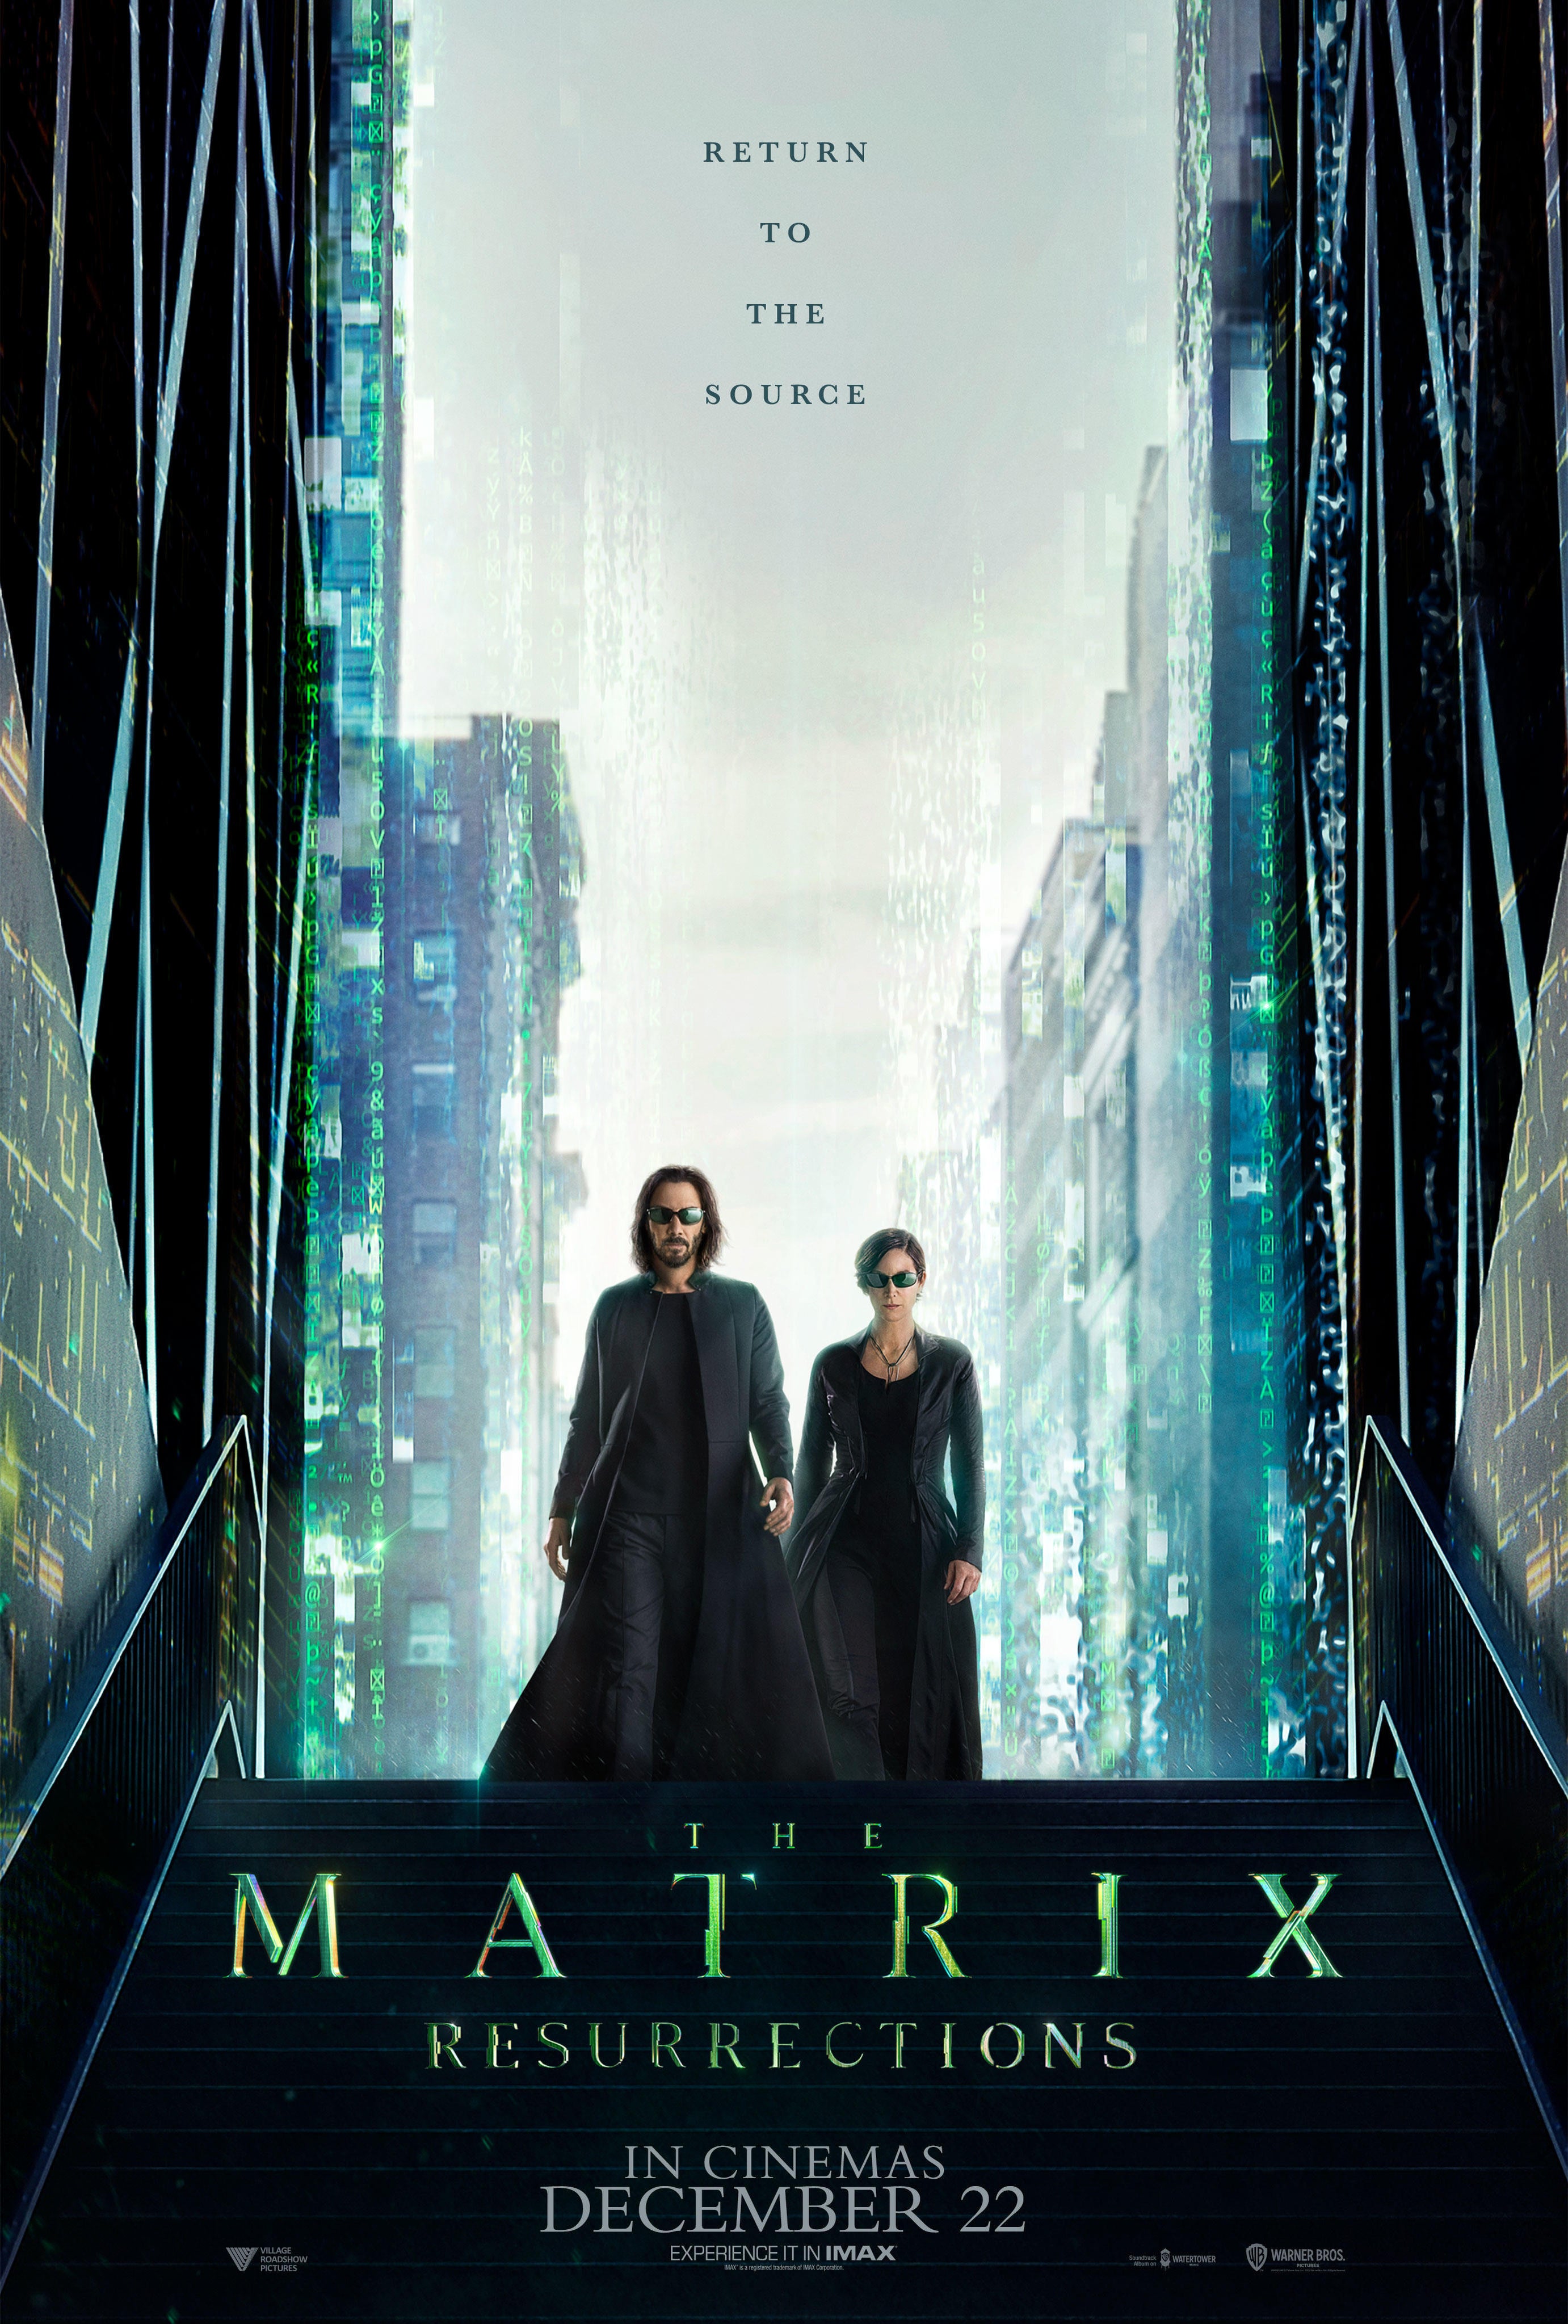 New The Matrix Resurrections Poster Spotlights Neo and Trinity